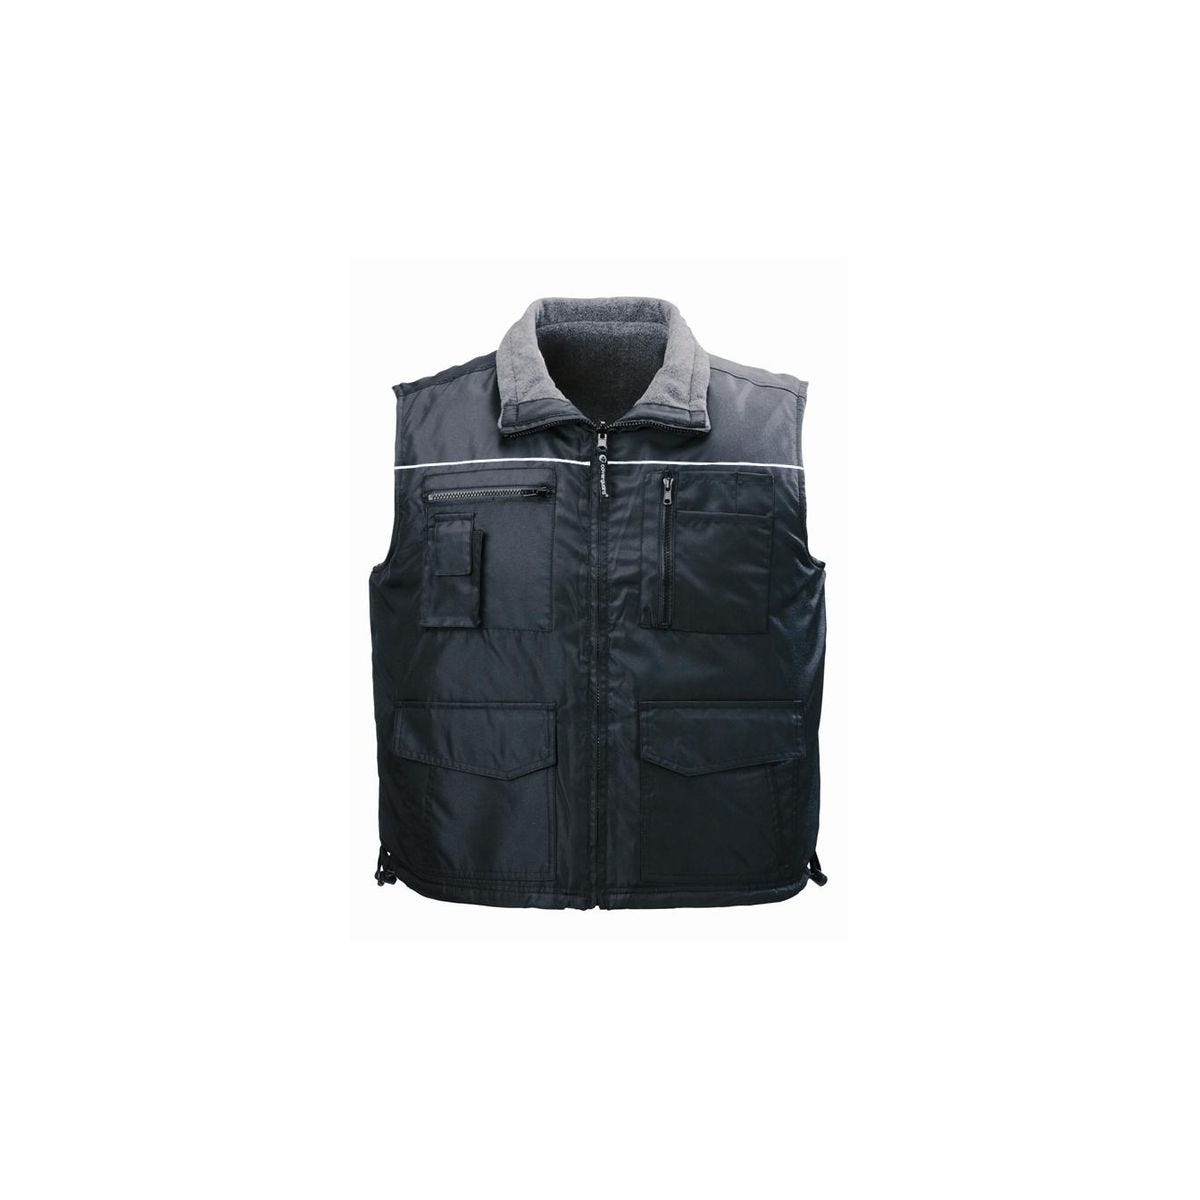 CARISTE Gilet Froid réversible noir, Polyester Oxford + Polaire 280g/m² - Coverguard - Taille L 0